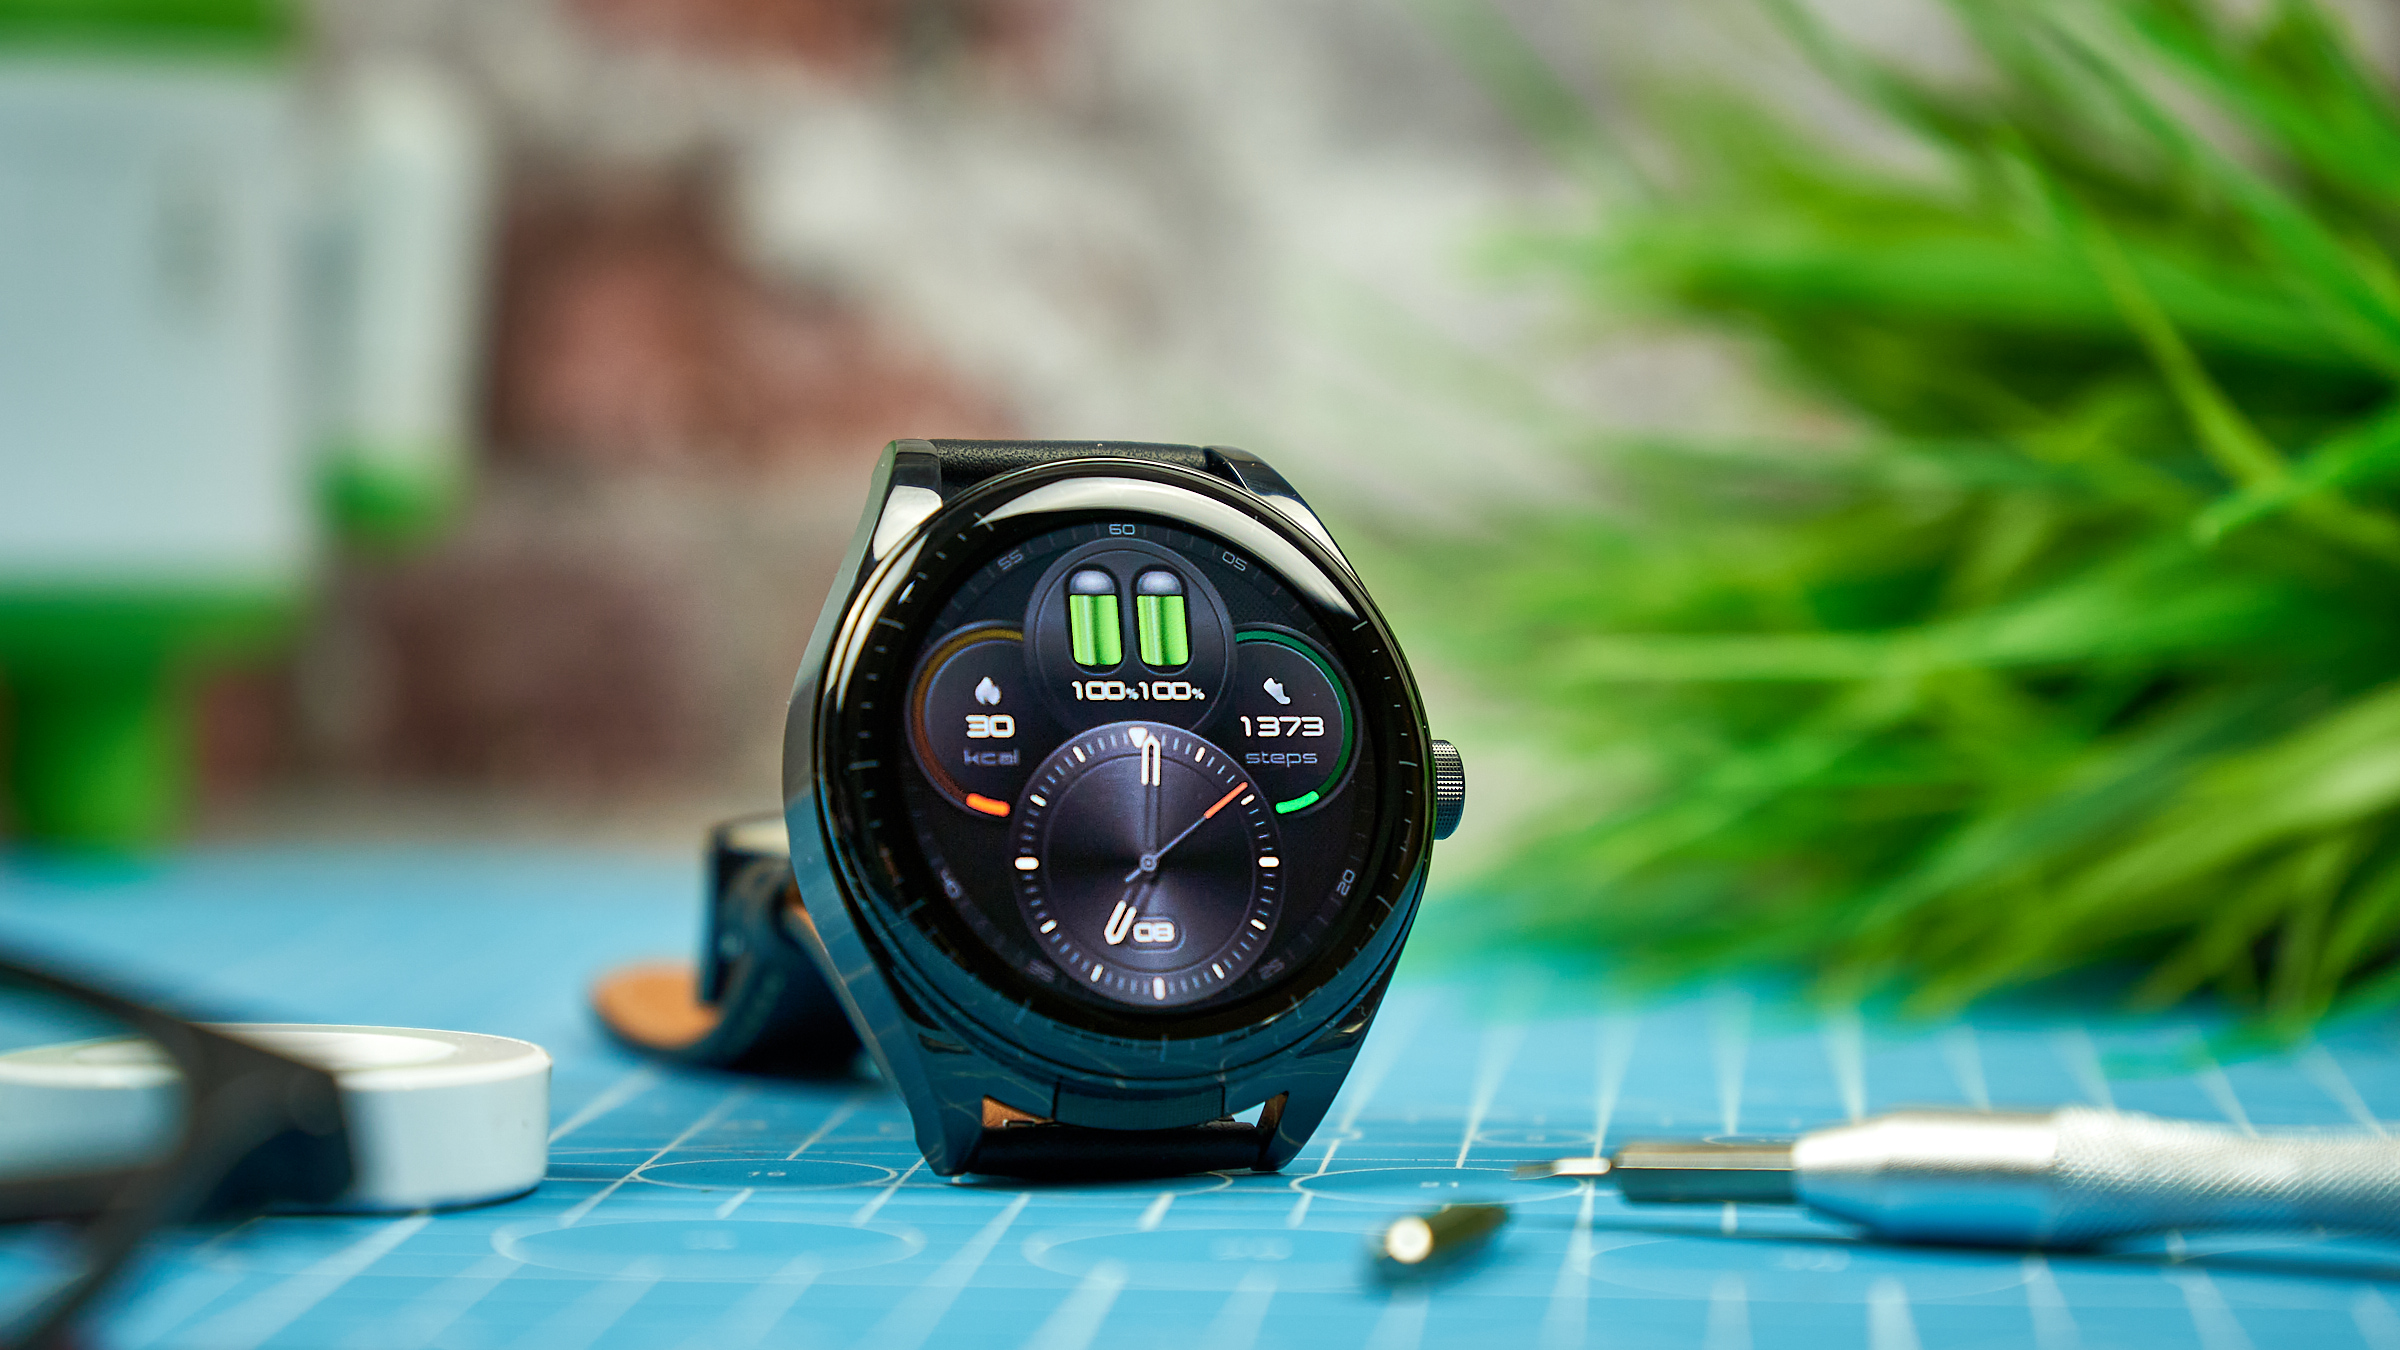 Nuevo Huawei Watch Buds: características, precio y ficha técnica